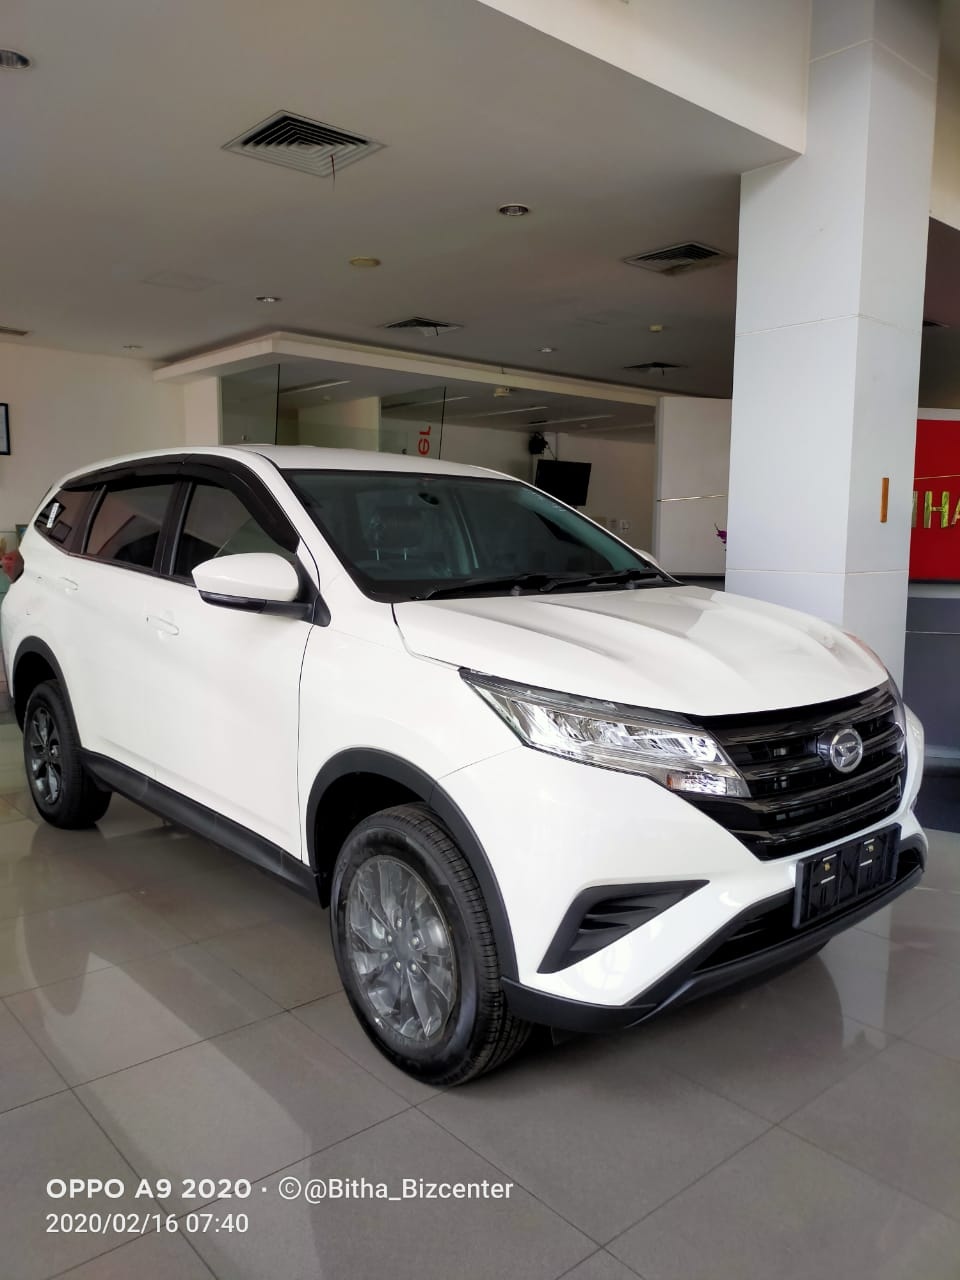 Rental Mobil Avanza Terbaru Di Bandung